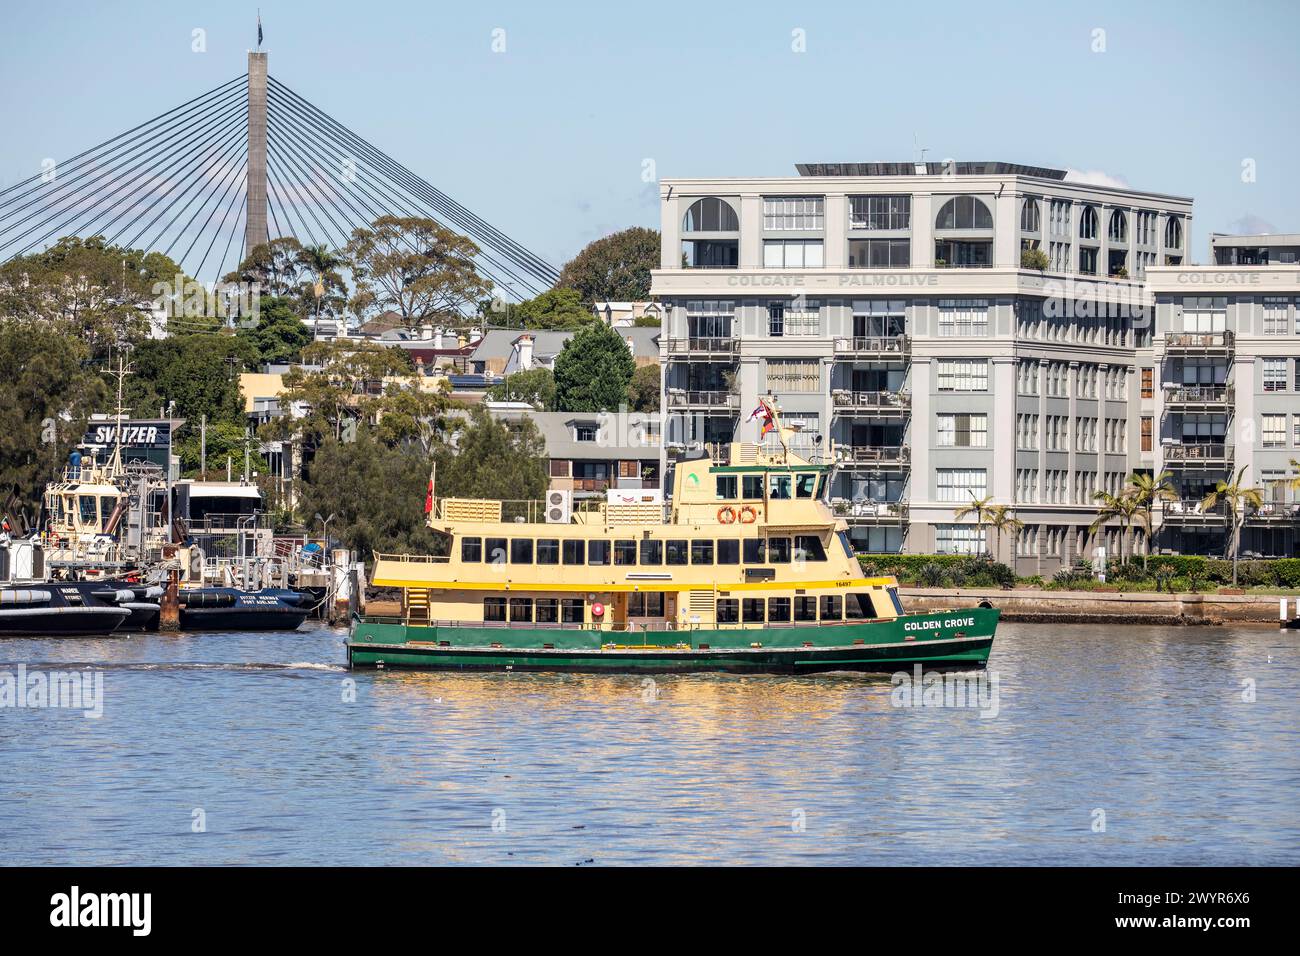 Sydney ferry le Golden Grove dans mort Bay, passe le pont Anzac et l'ancienne usine de savon Colgate Palmolive, Sydney, Nouvelle-Galles du Sud, Australie Banque D'Images